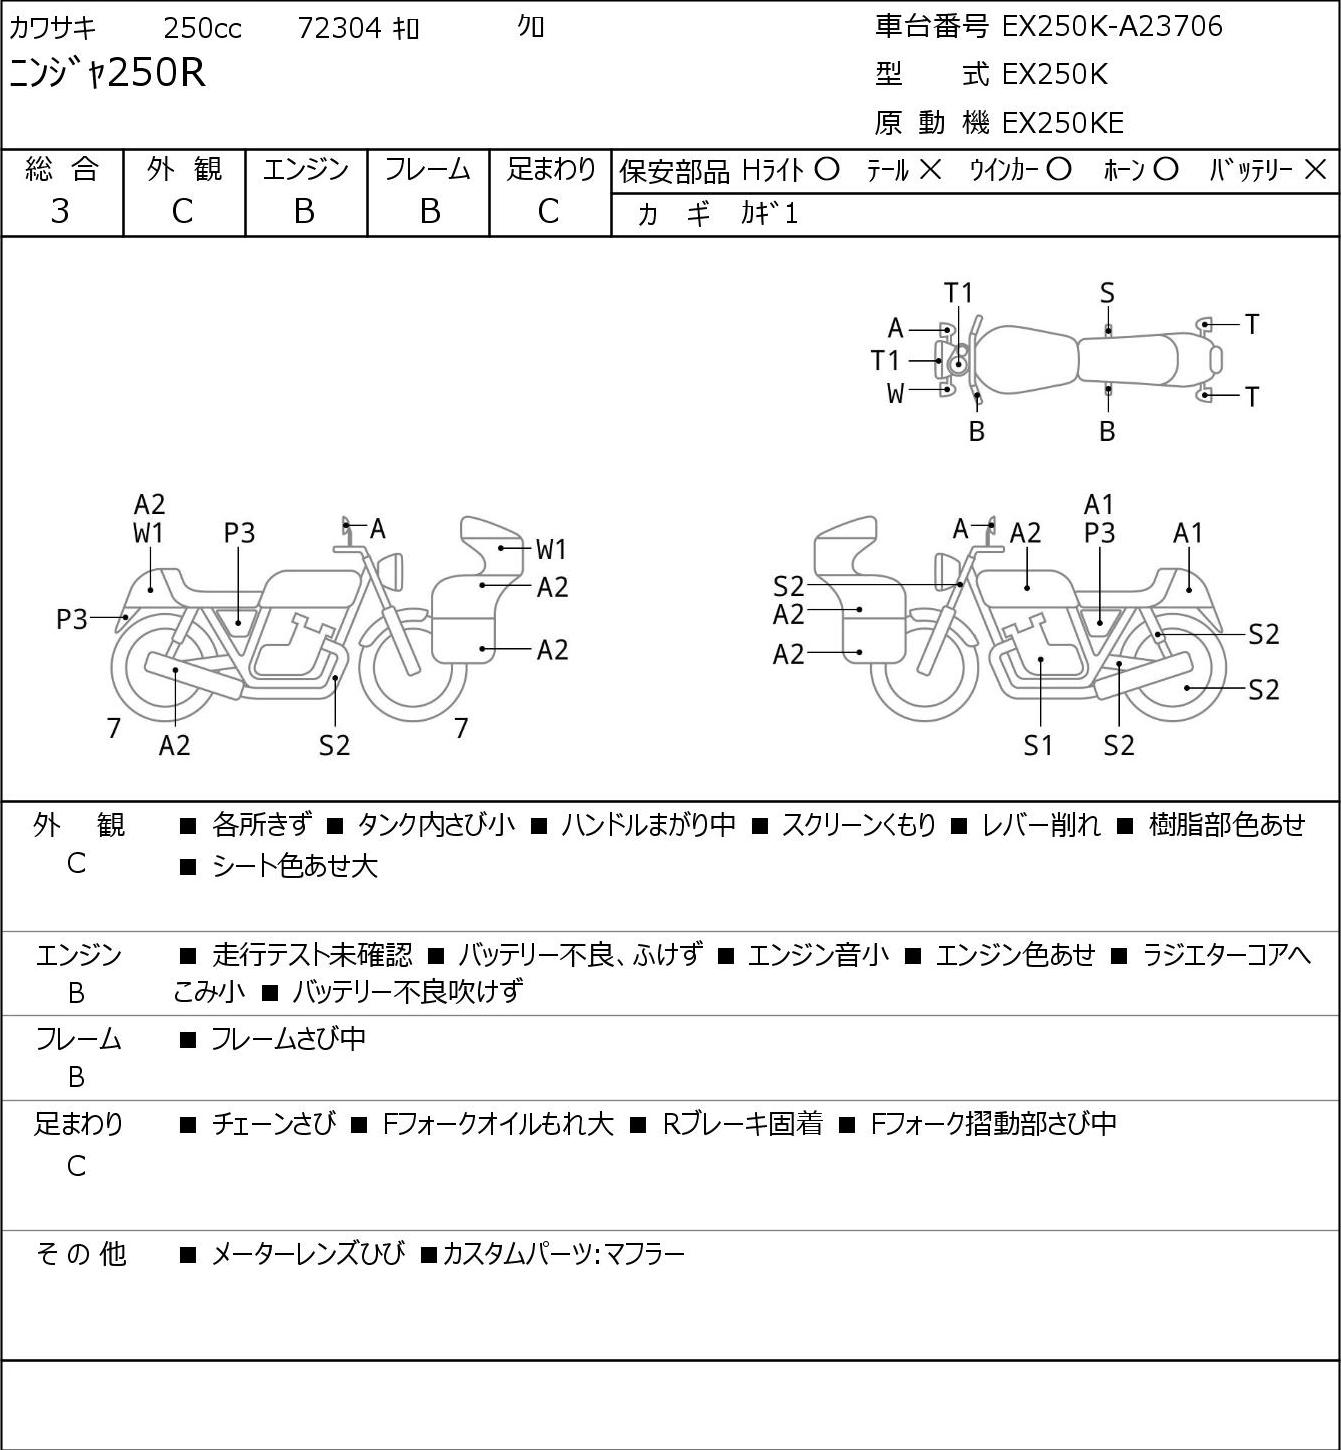 Kawasaki NINJA 250 R EX250K г. 72304